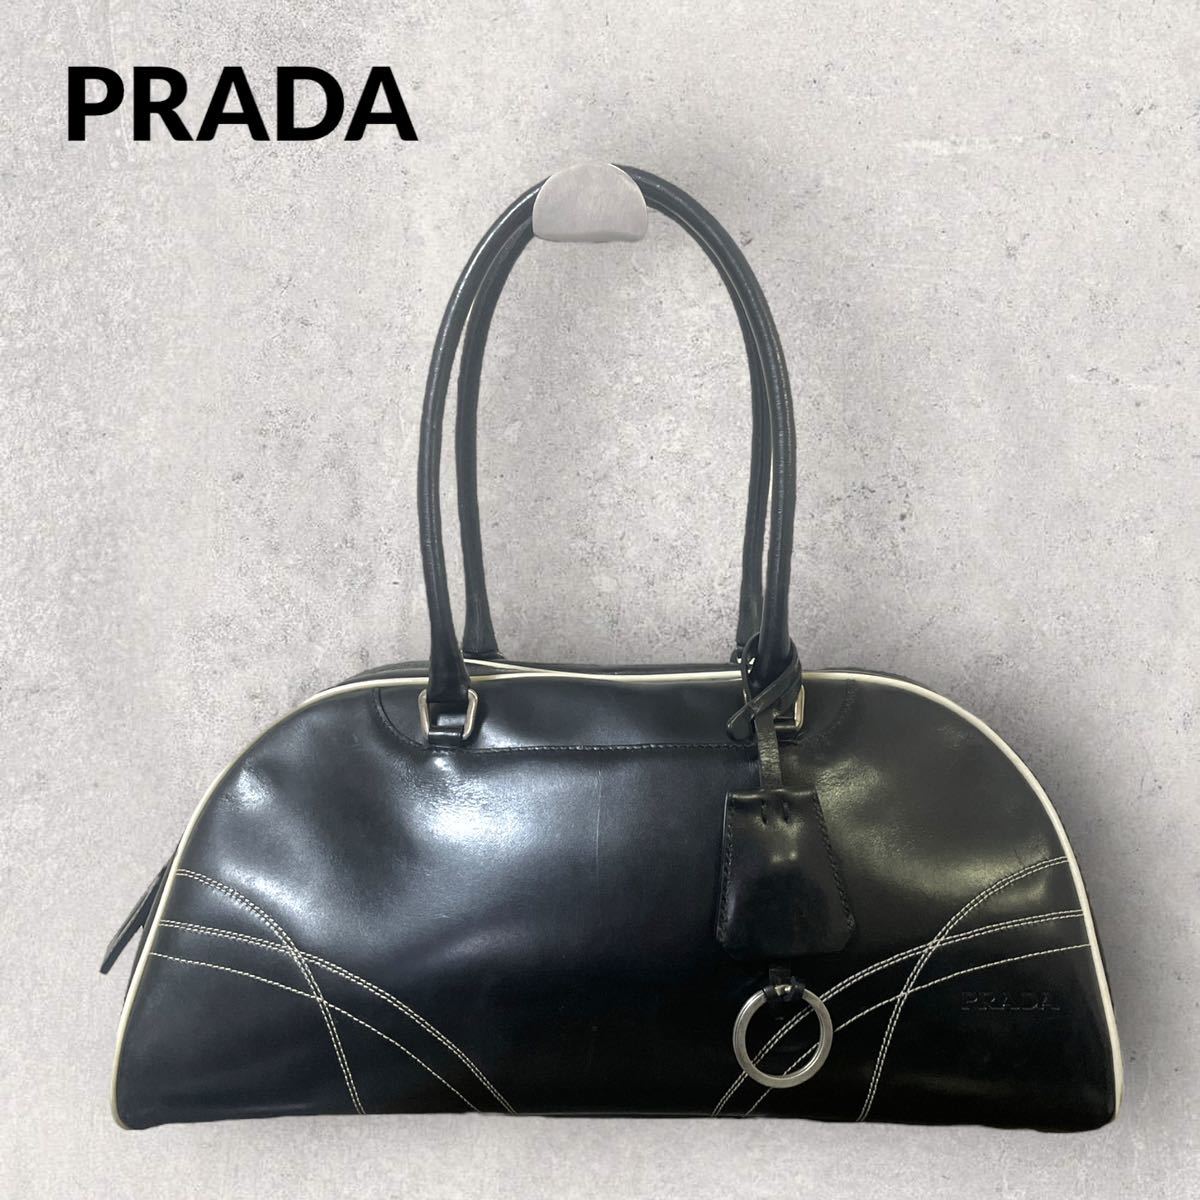 特価商品 オールレザー イタリア製 プラダ PRADA エンボスロゴ